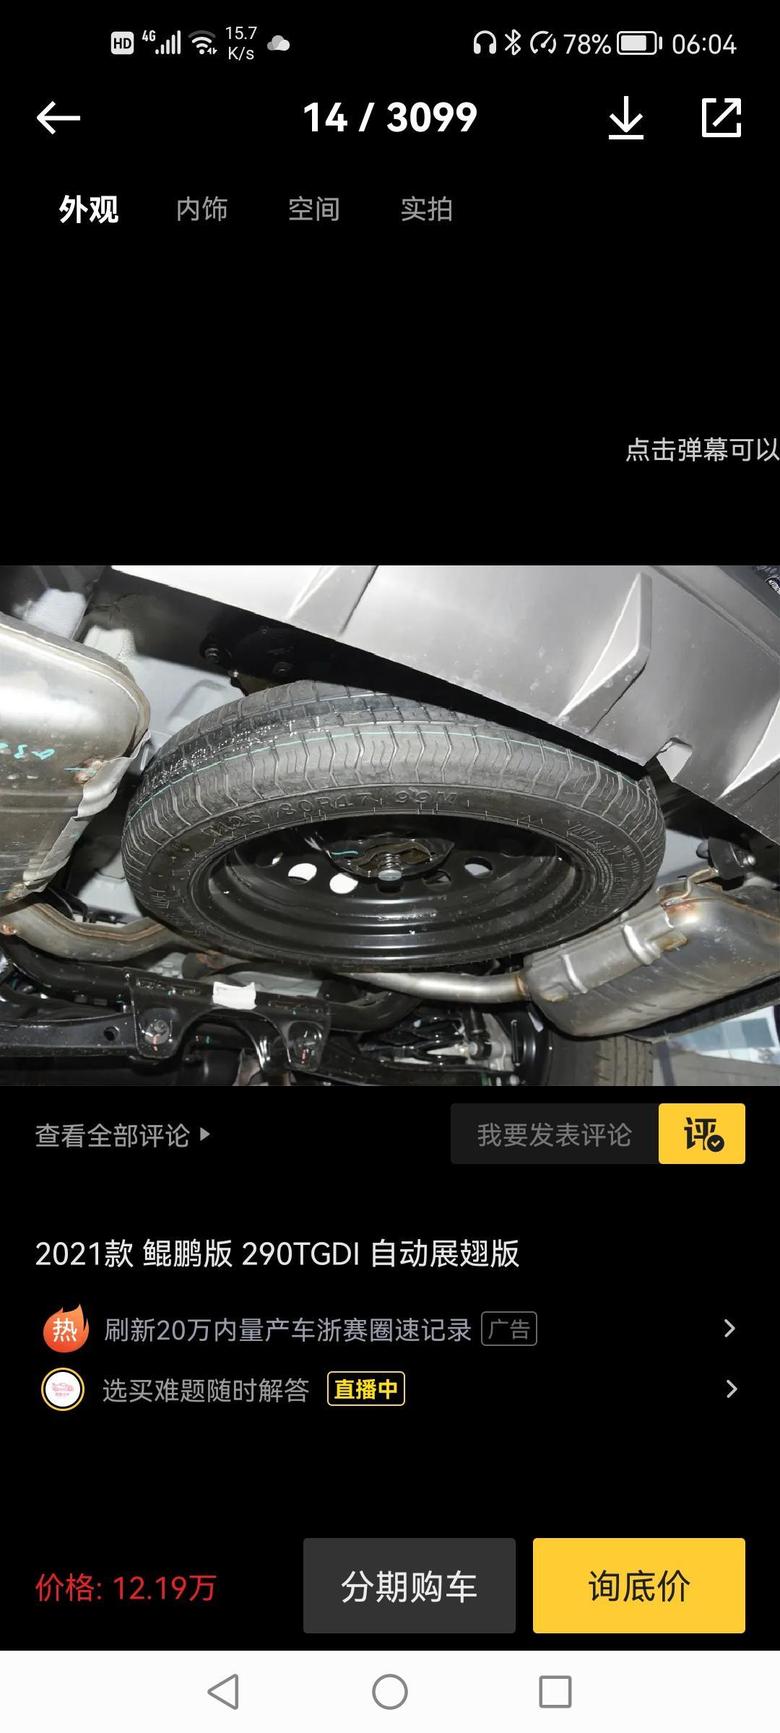 瑞虎8奇瑞惟独让我看不上眼的就是备用轮胎，设计时竟然给裸露在外面。设计工程师没考虑消费者的眼光吗？